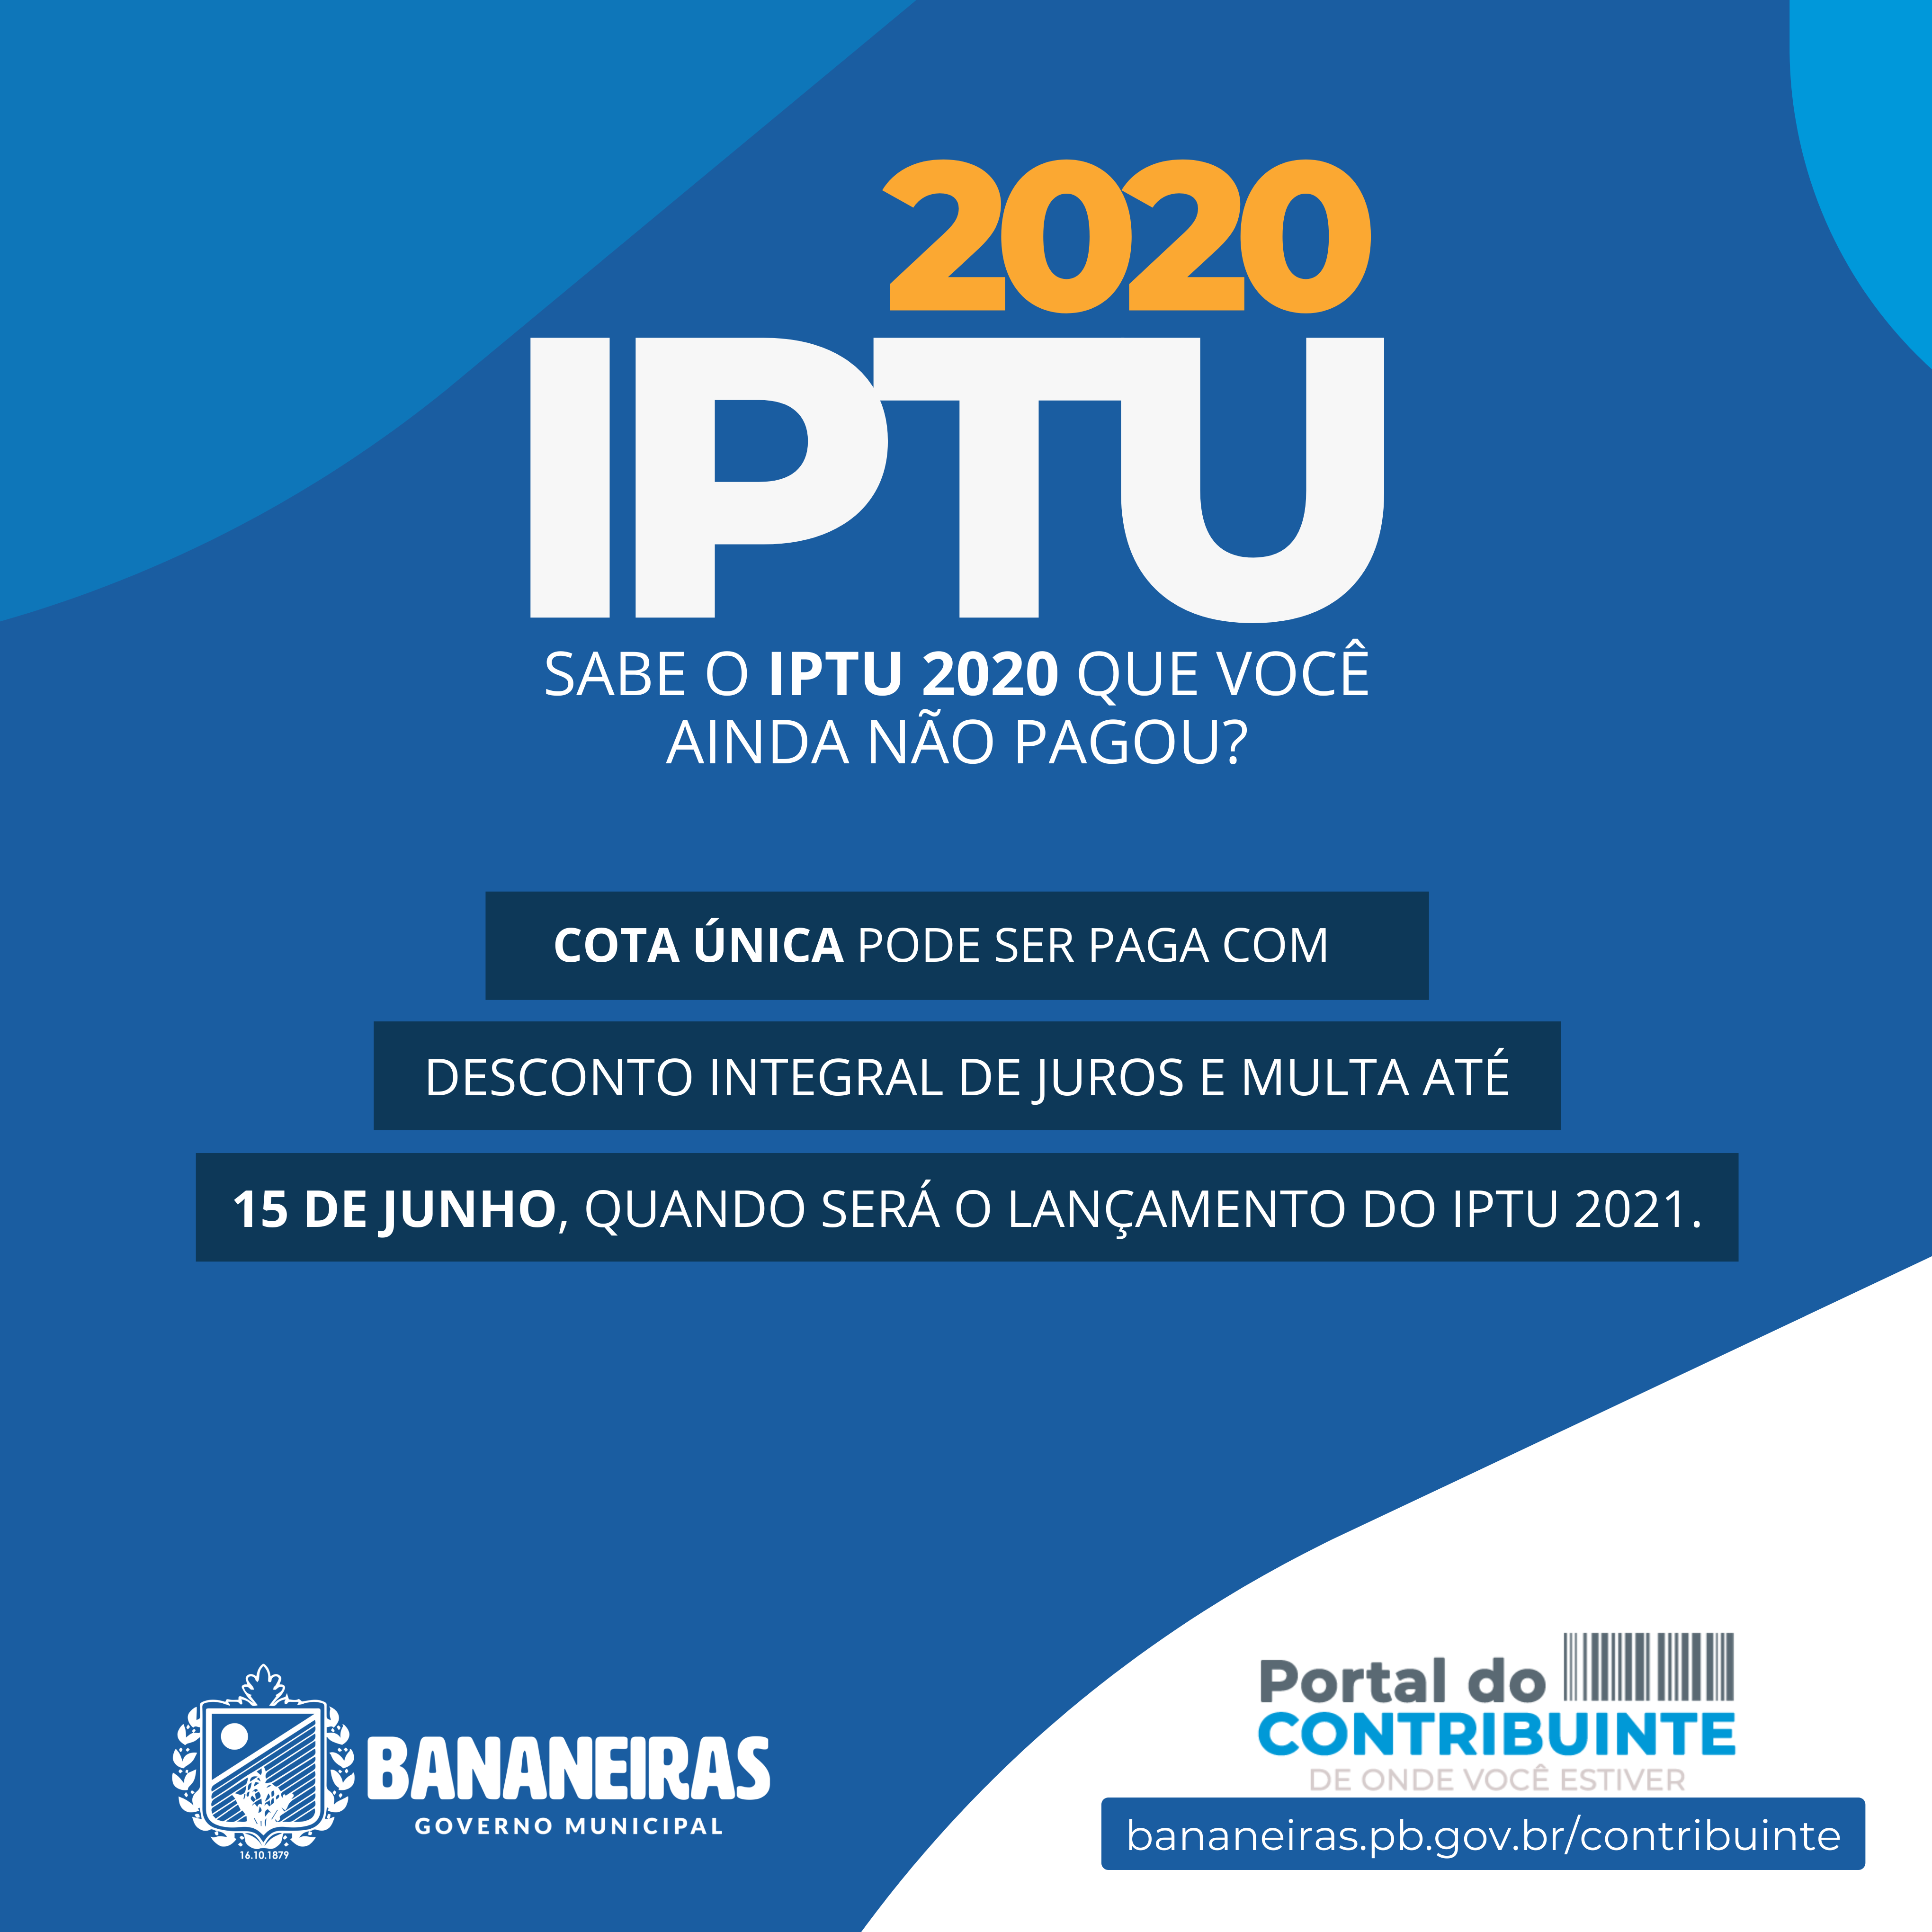 Oportunidade imperdível para pagamento da cota do IPTU 2020 com desconto integral dos juros e multa